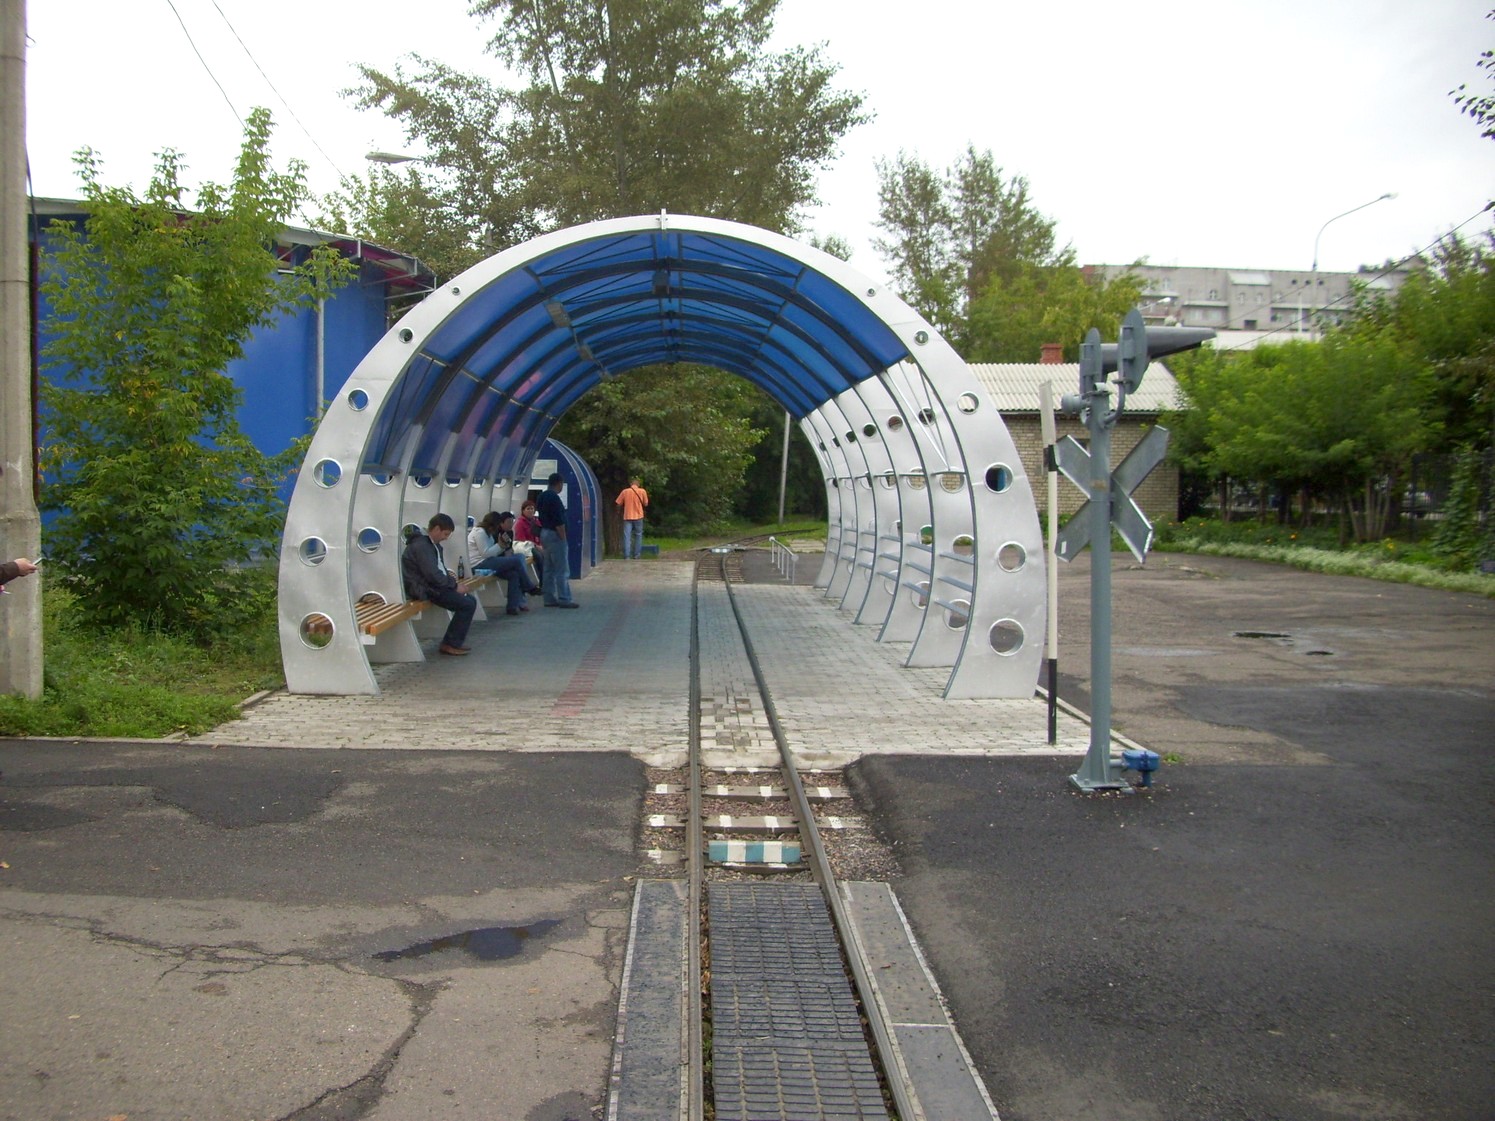 Красноярская детская железная дорога  —  фотографии, сделанные в 2009 году (часть 2)